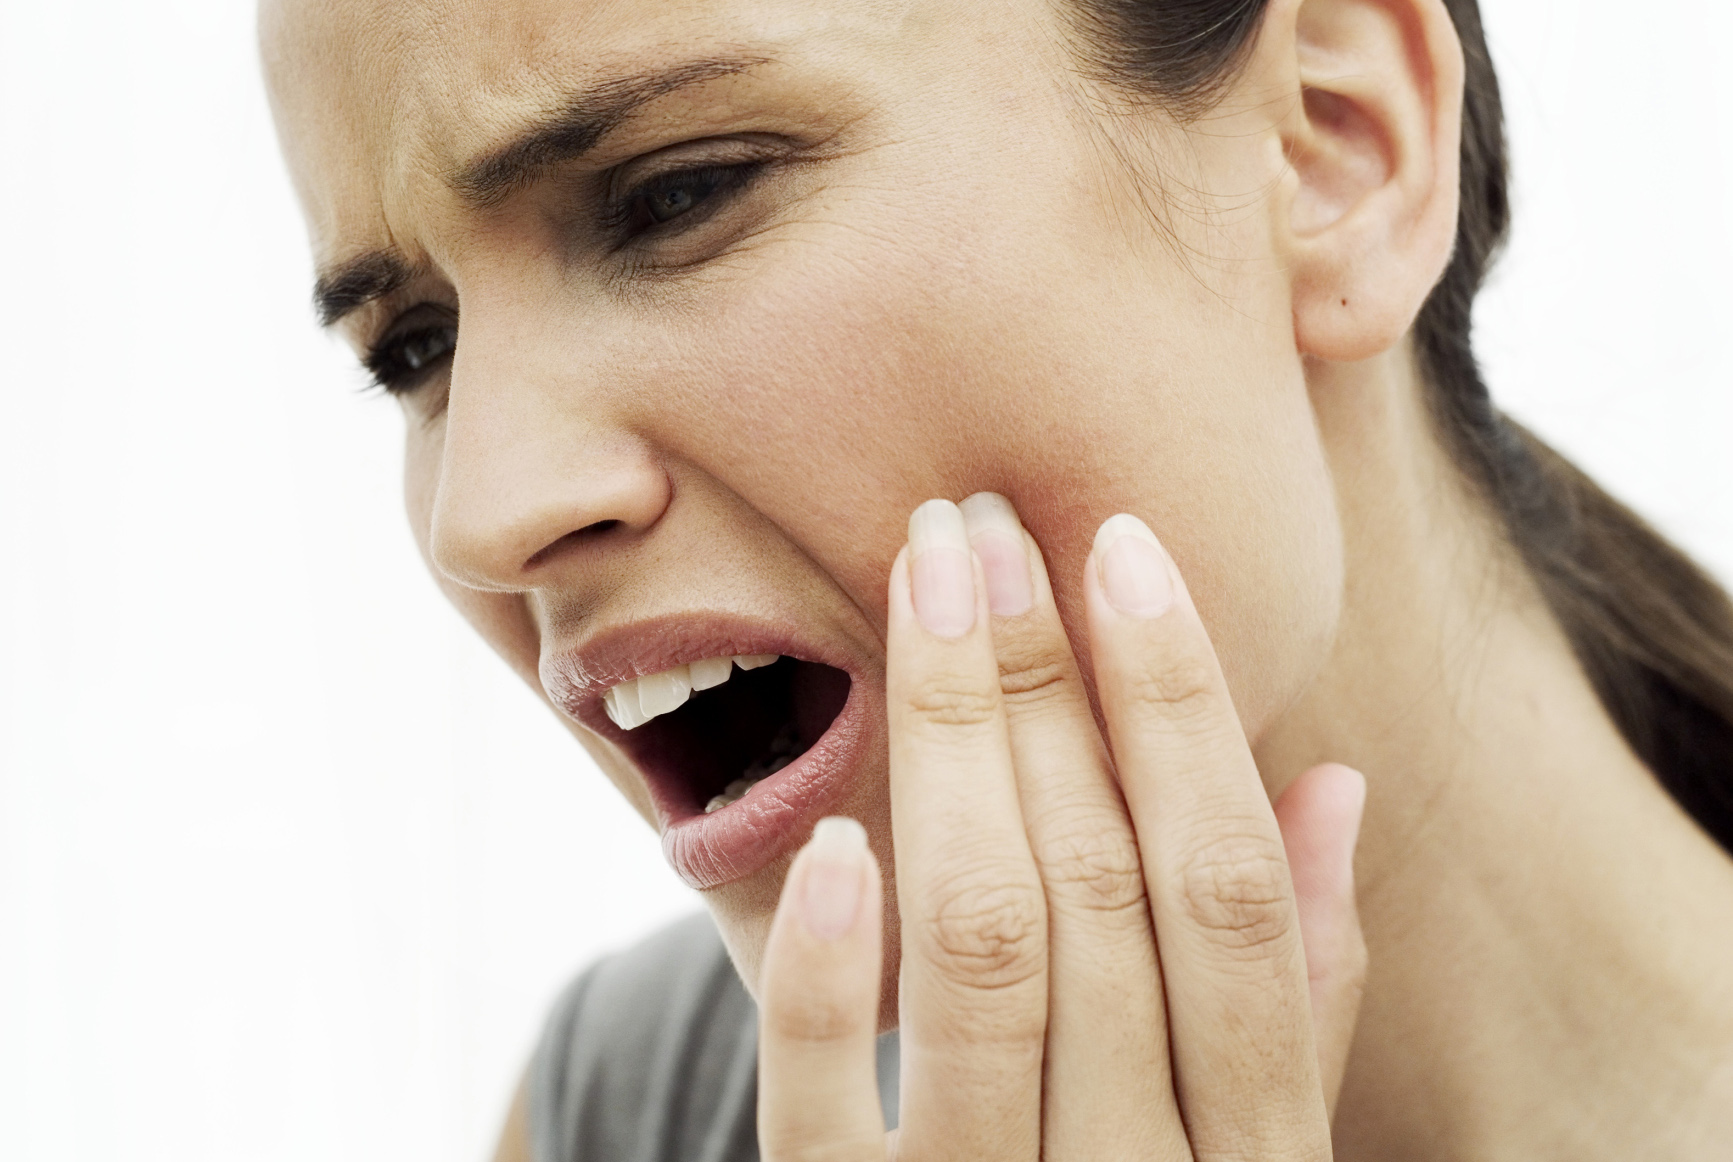 주의하십시오. 치은염을 치료하지 않으면 두경부암 발병 위험이 높아집니다.